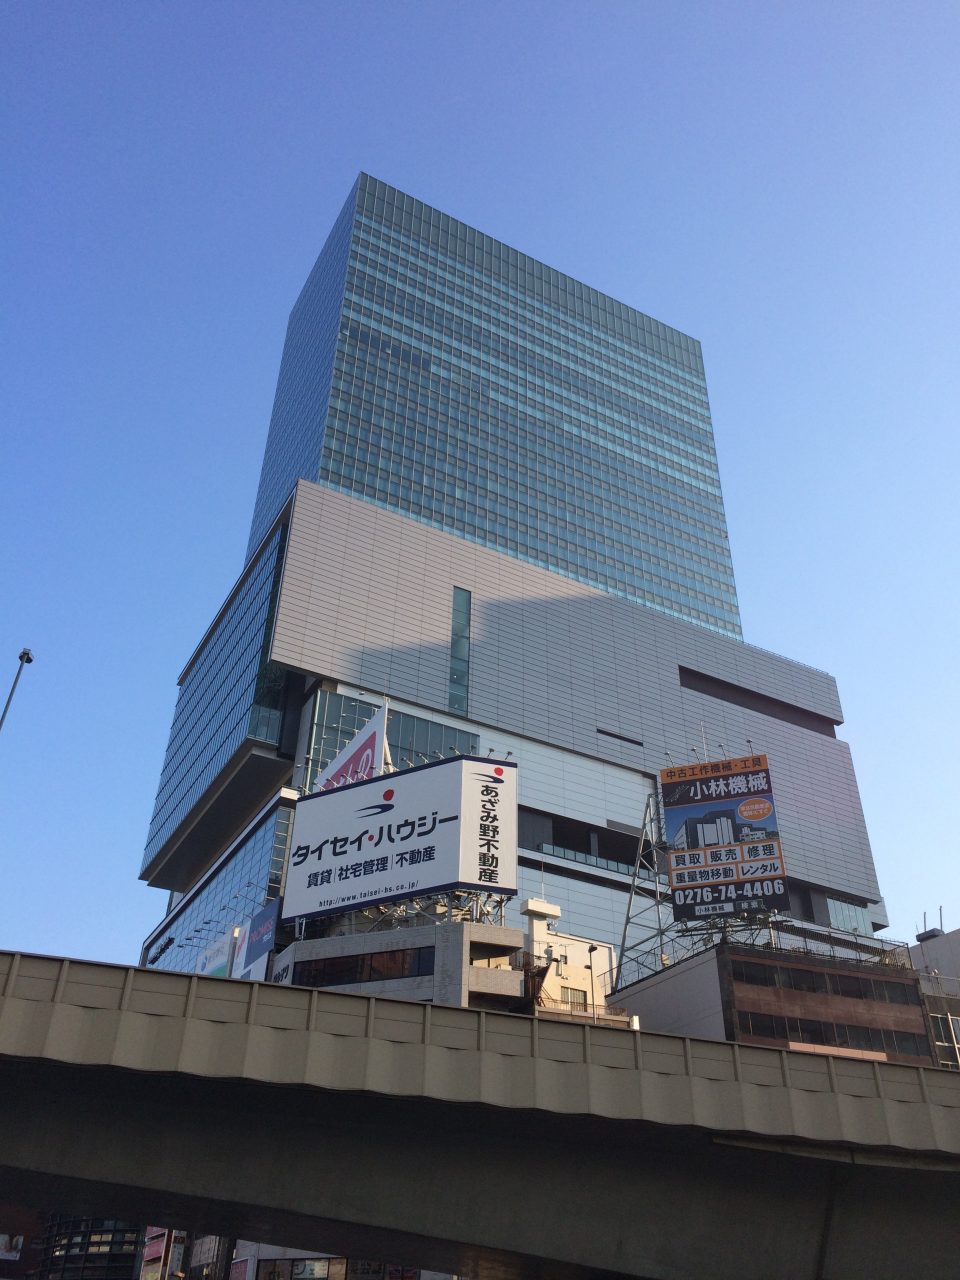 渋谷ヒカリエと雑居ビルの看板・首都高の高架の写真